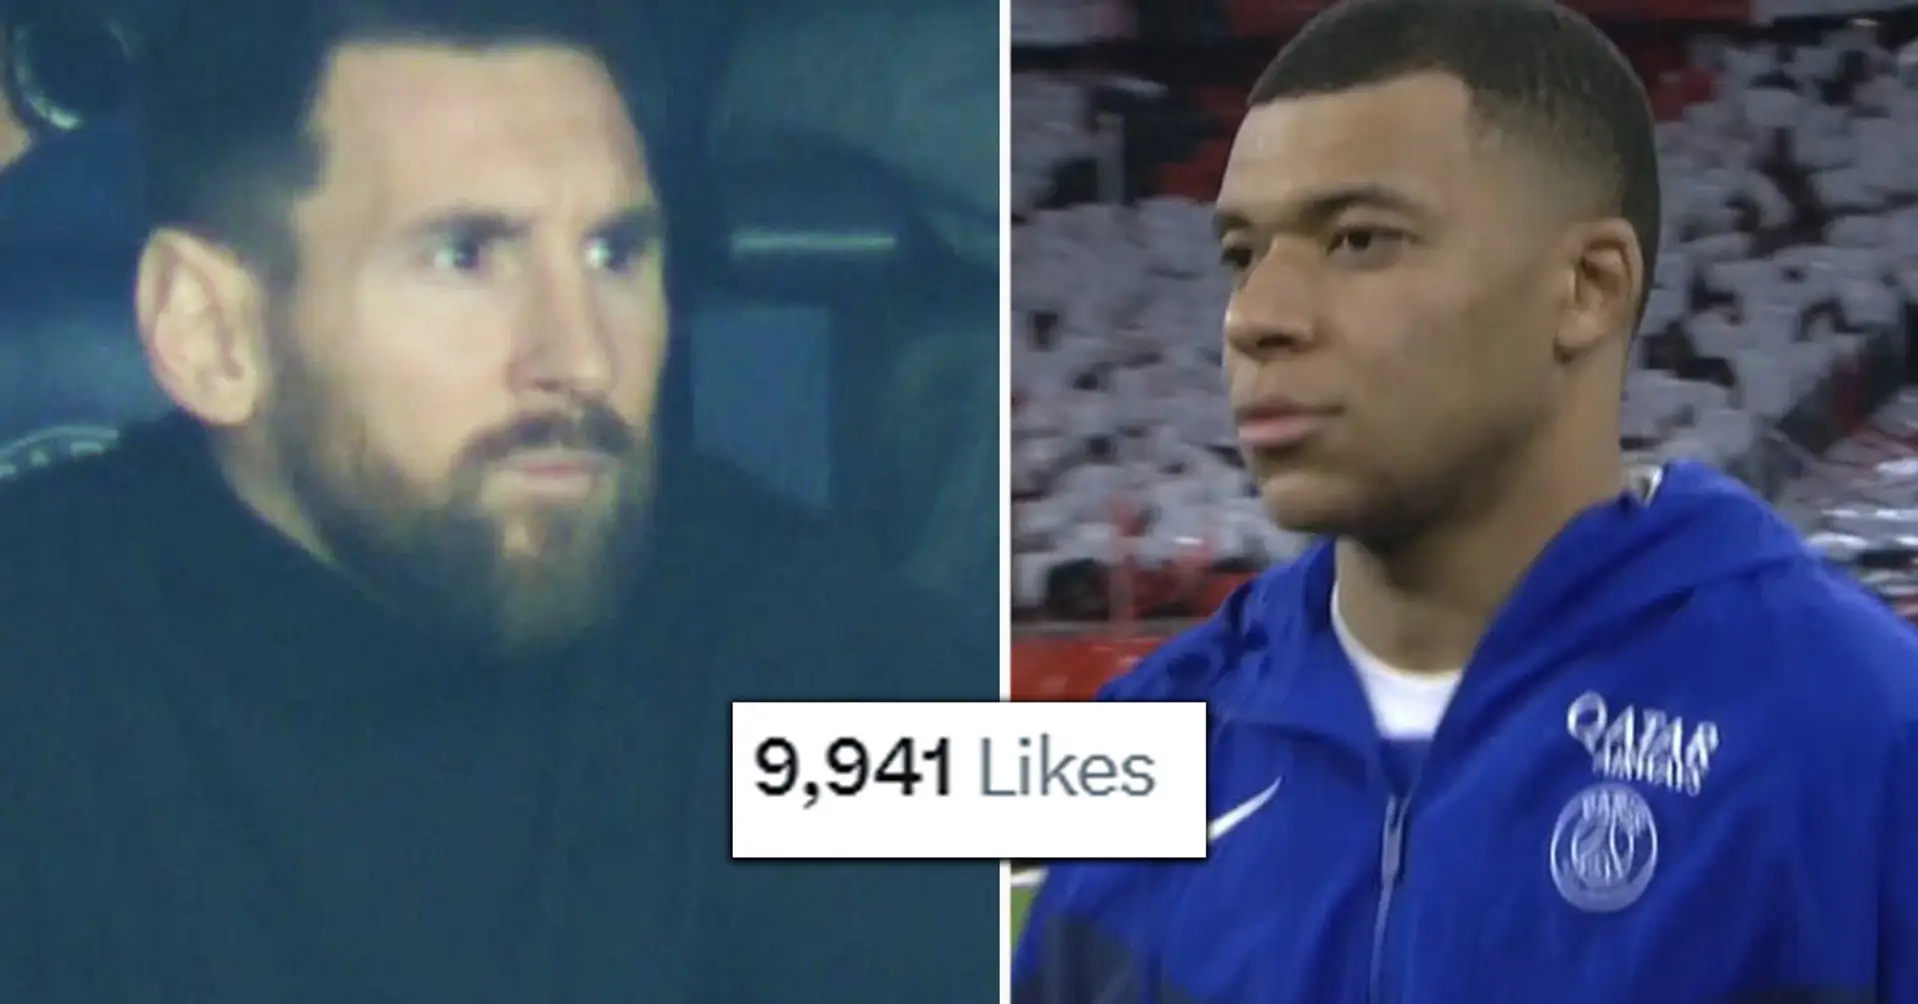 Der Tweet eines Fans, der das Verhalten von Messi und Mbappe vergleicht, erhielt 10.000 Likes - PSG bestraft Leo für Reise nach Saudi-Arabien